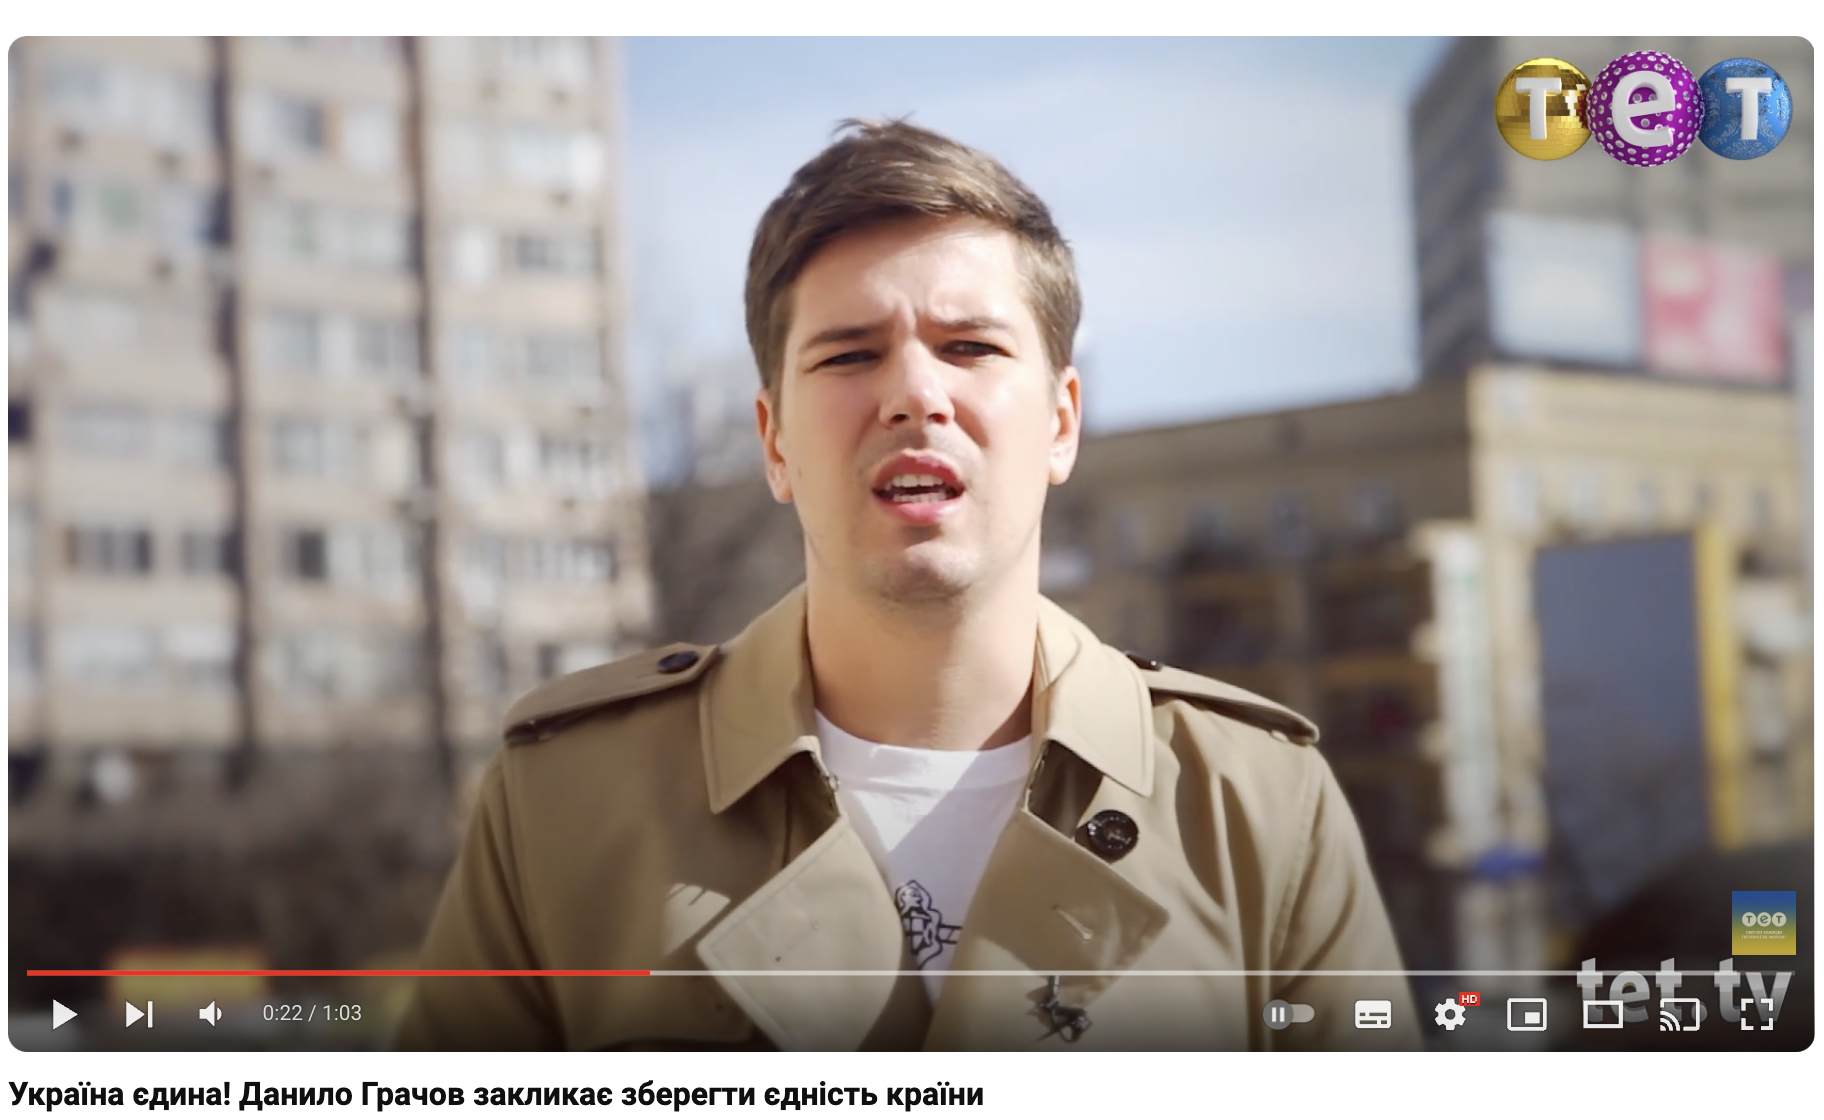 Ведущий из Донецка, выступавший за единую Украину, оказался предателем: Даниил Грачев работает на росТВ и подыгрывает пропаганде